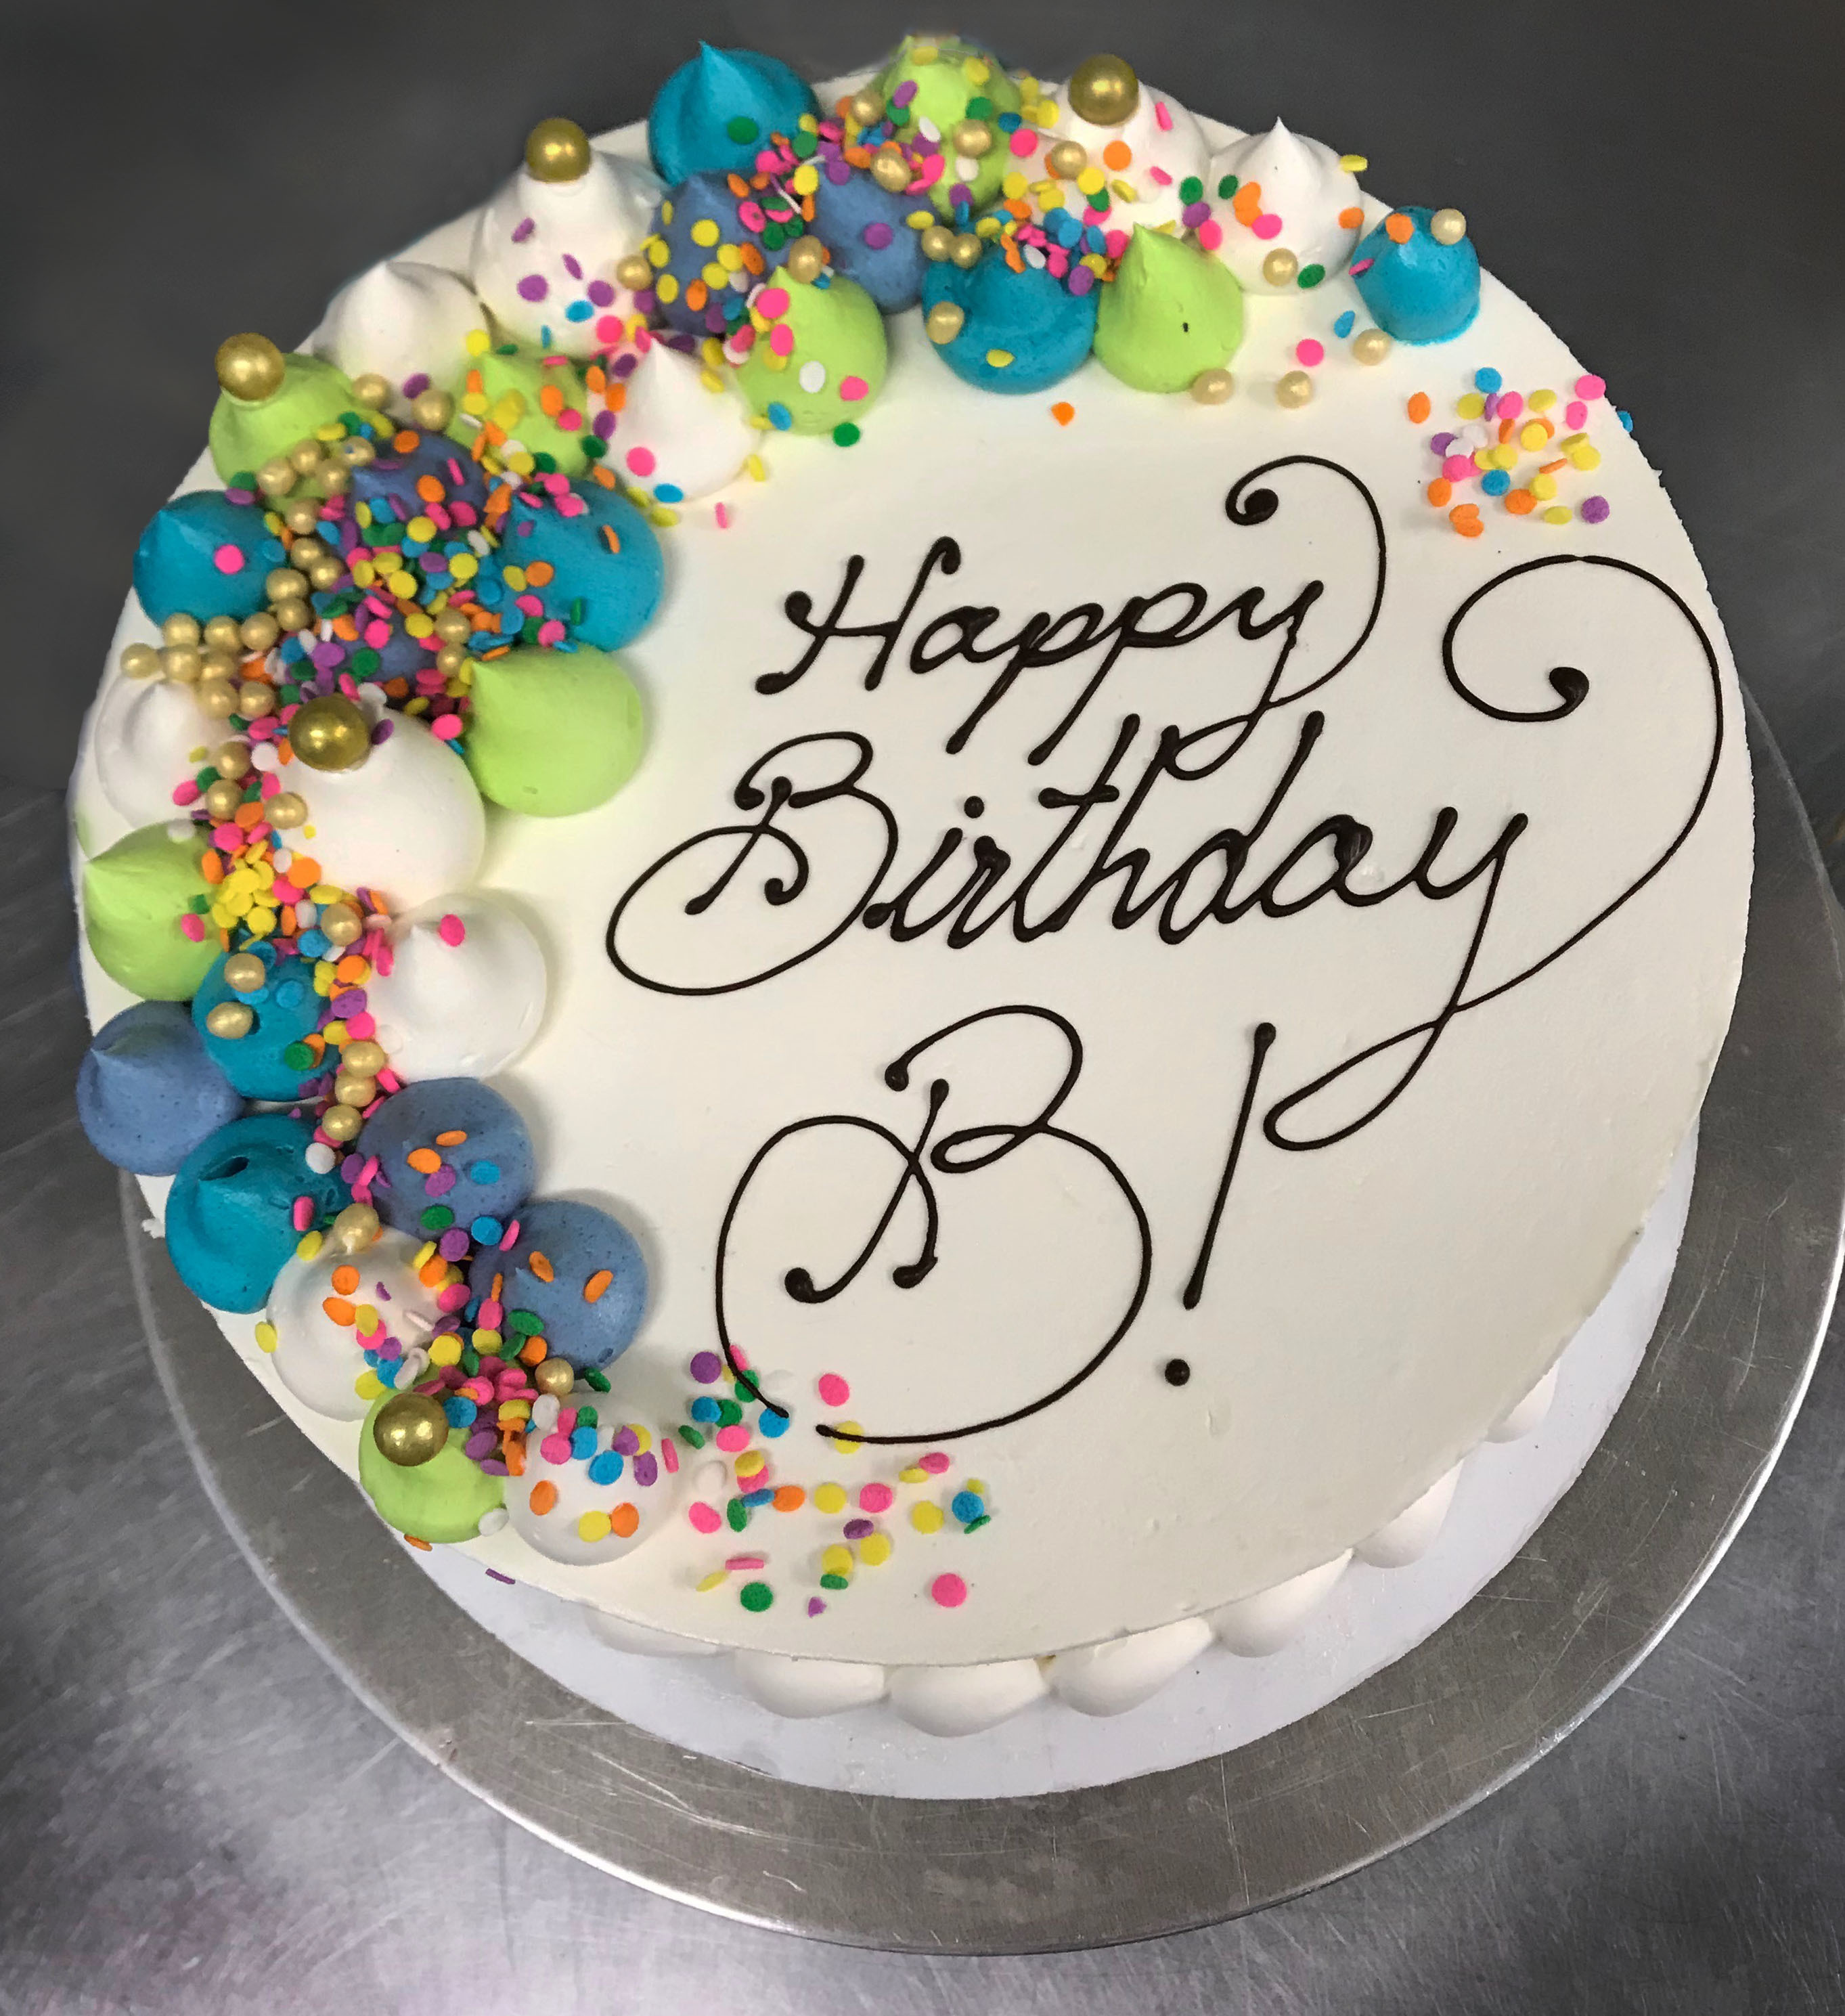 birthday cake that says happy birthday b!